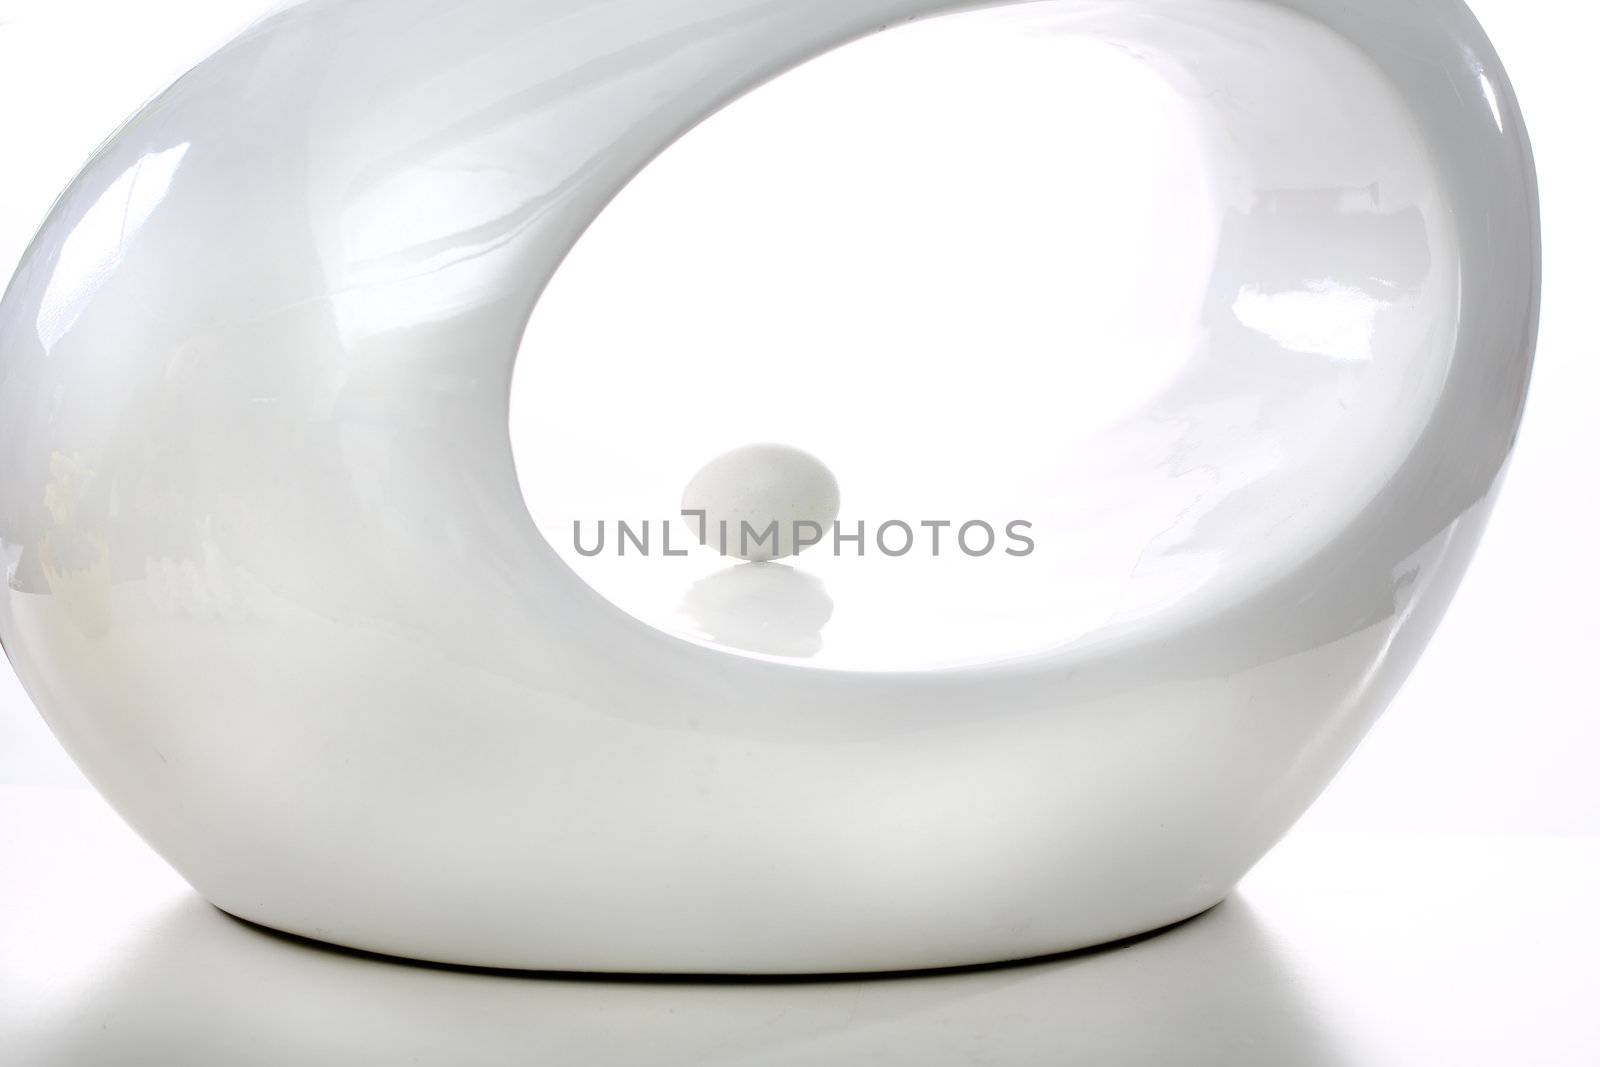 White oval shape on white background